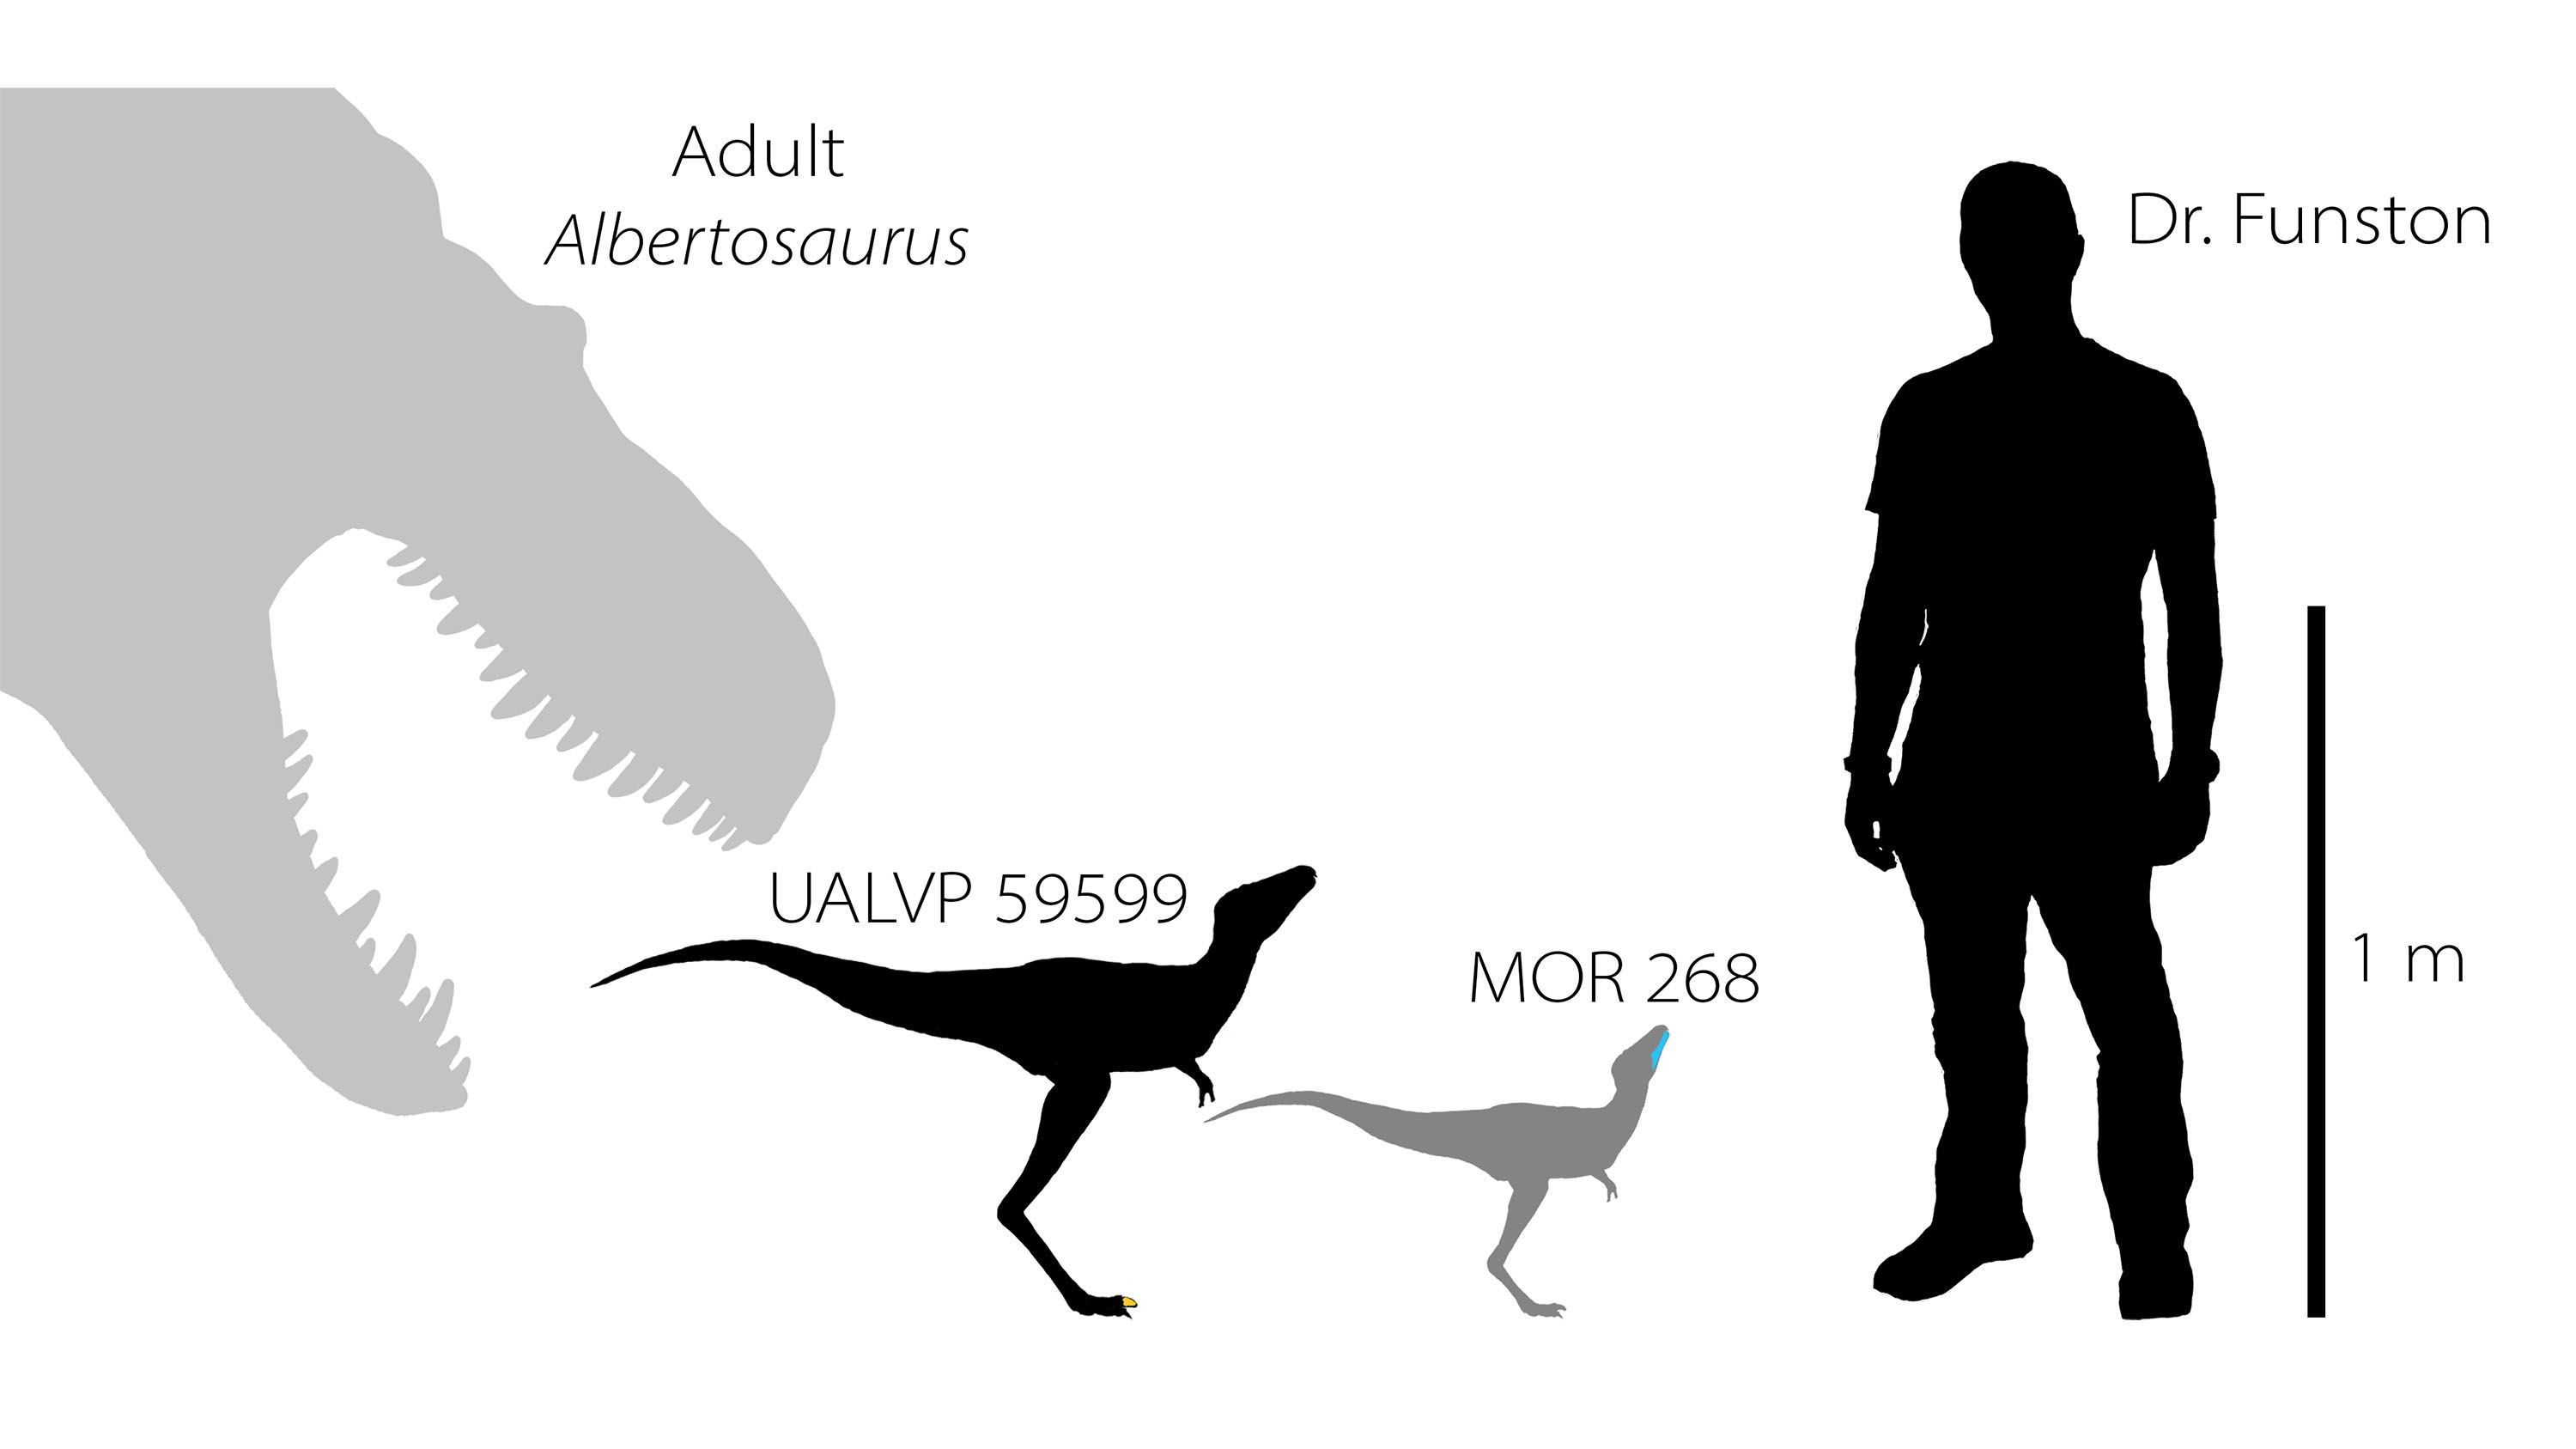 tyrannosaurus size